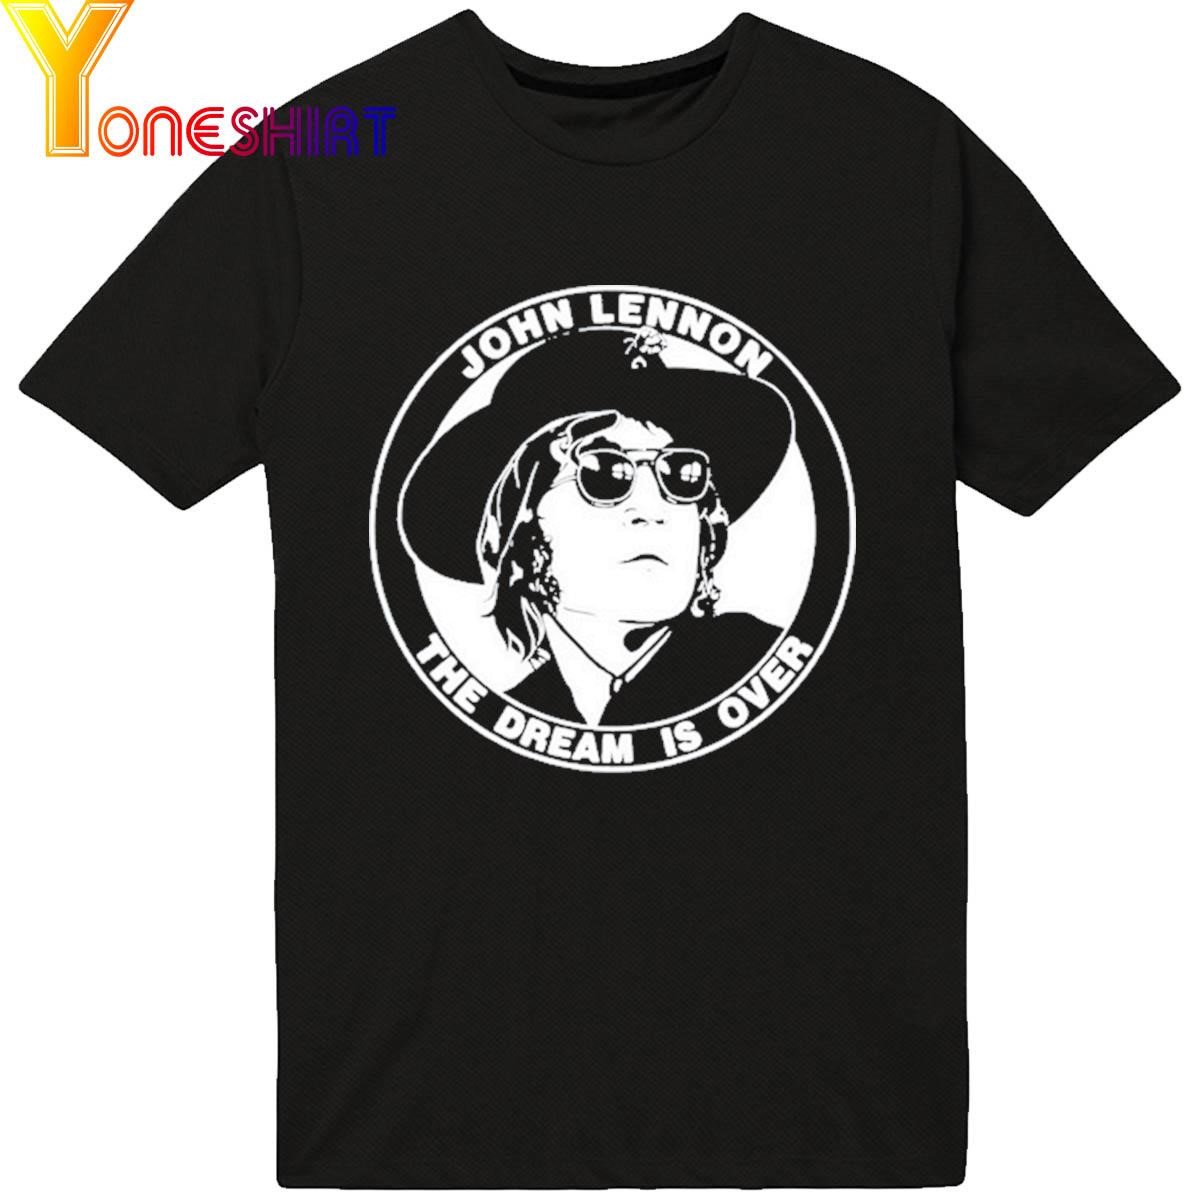 John Lennon The Dream Is Over shirt